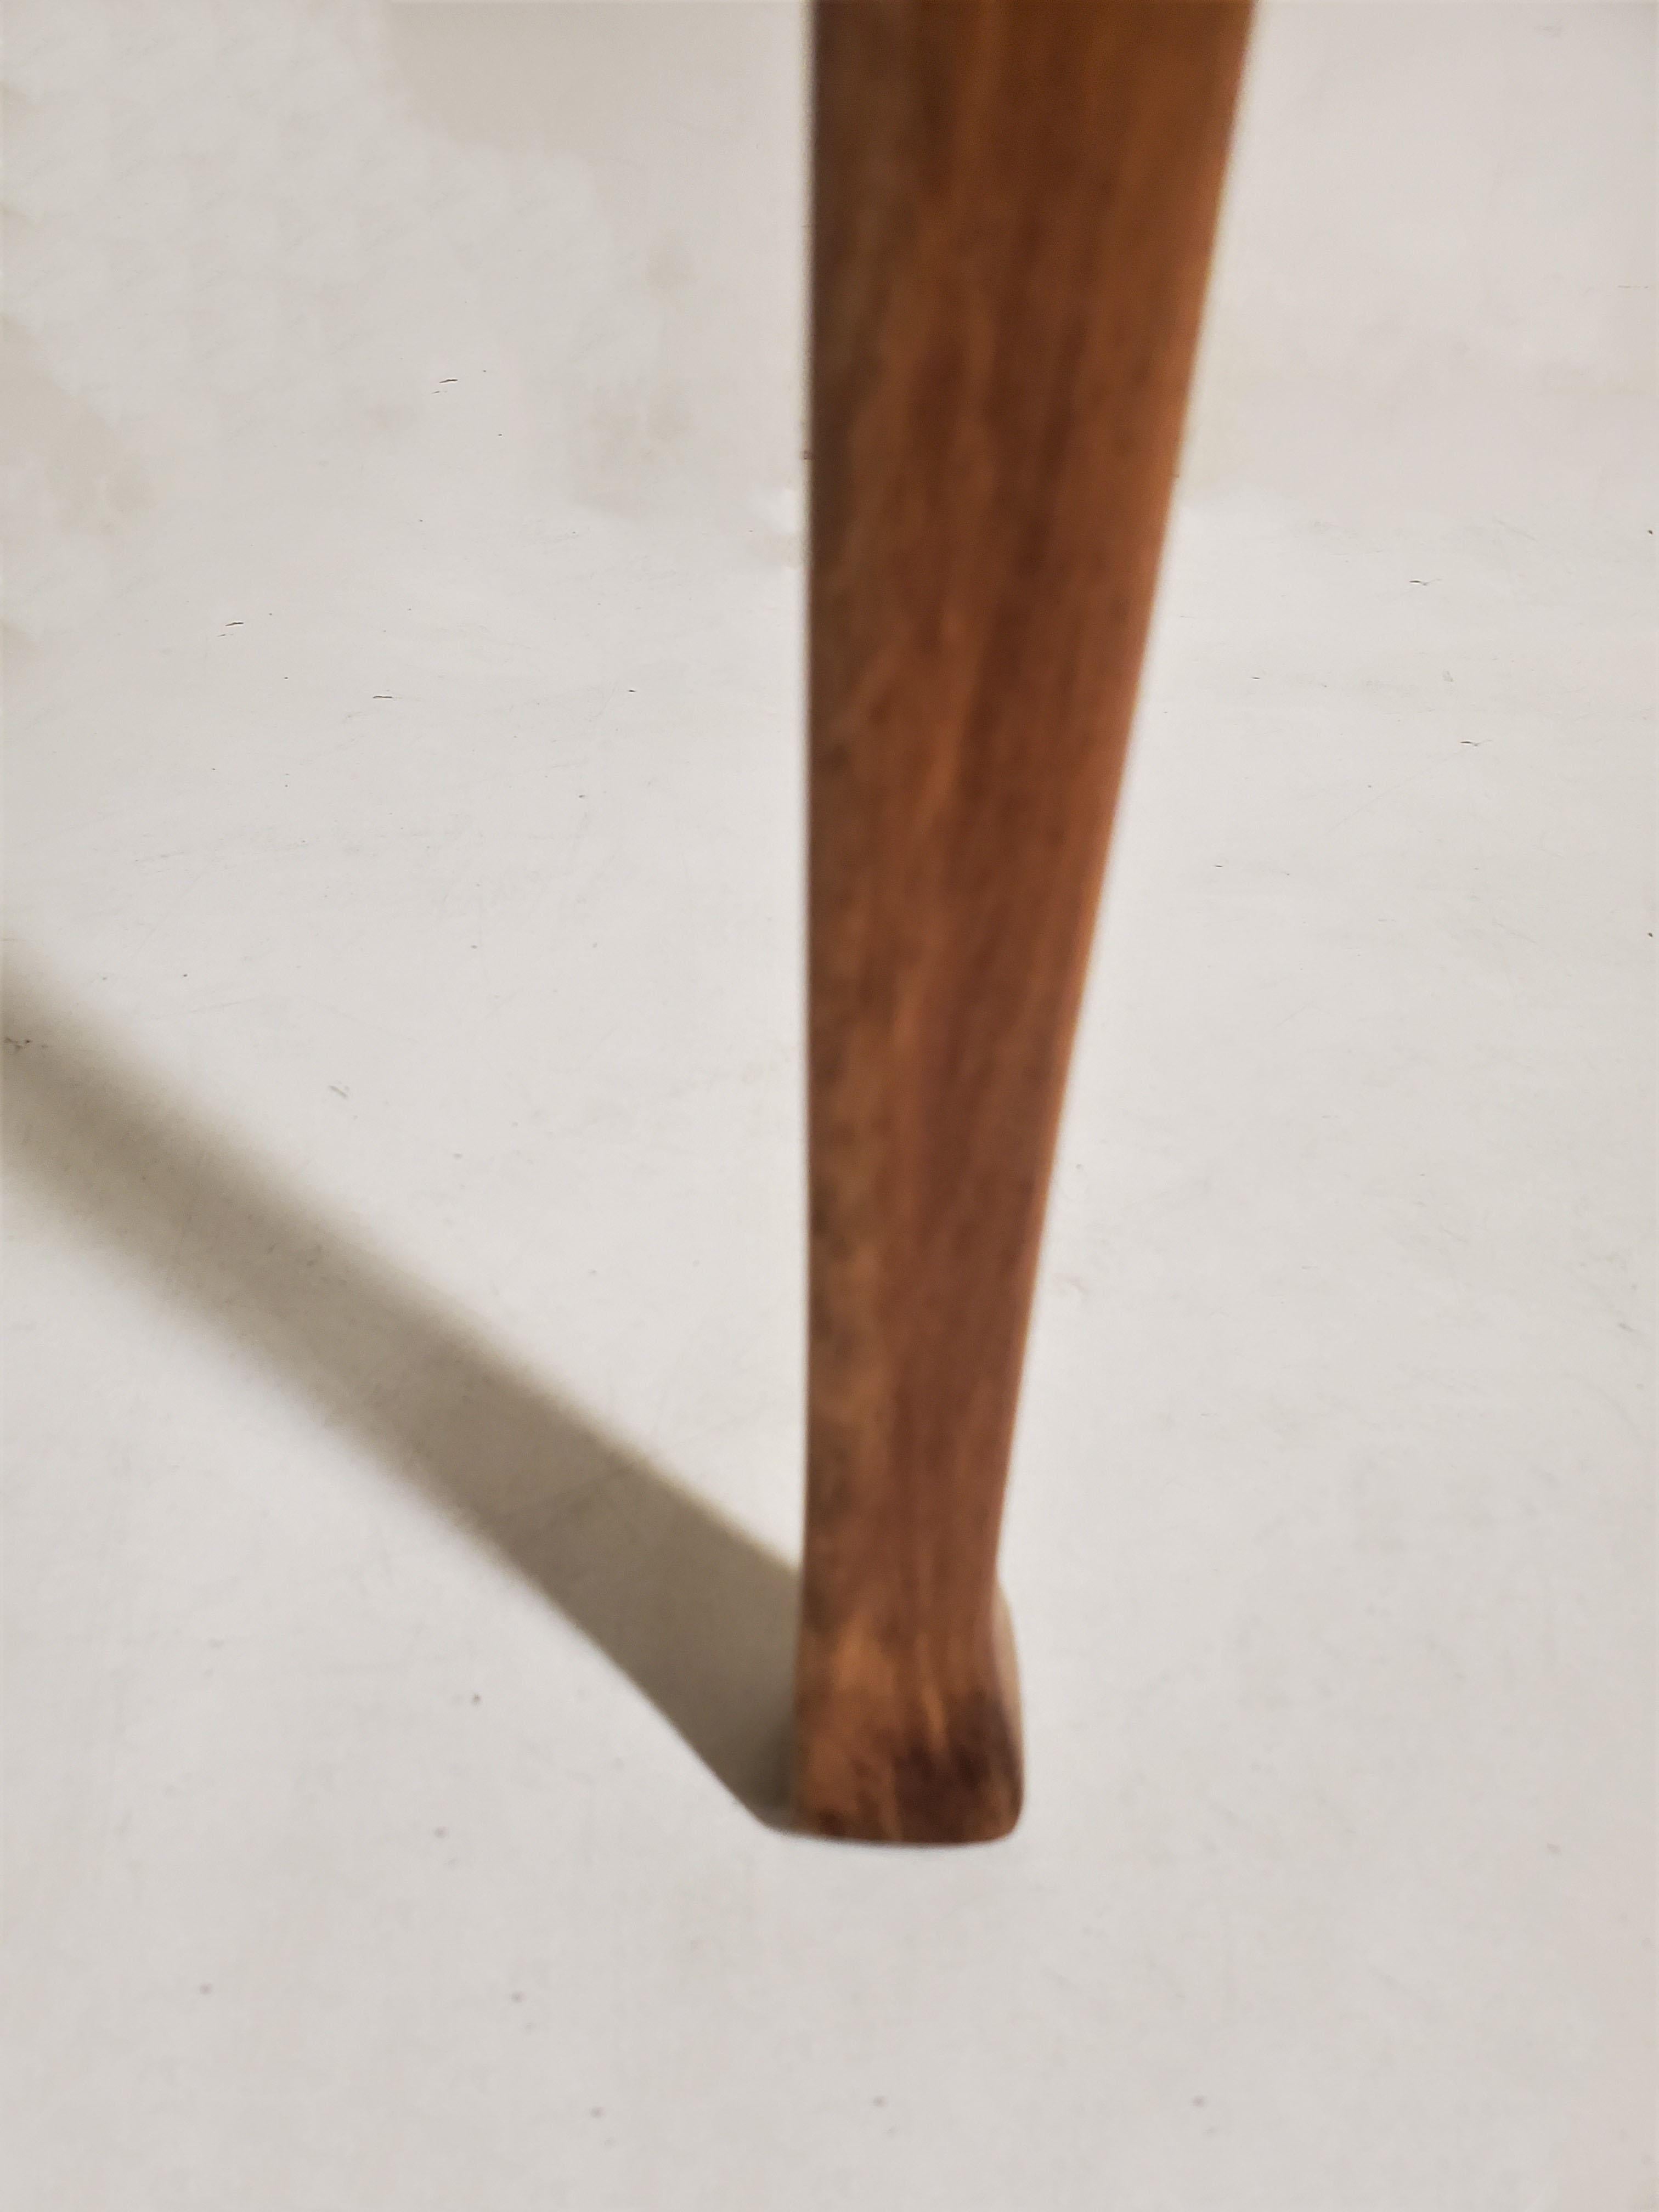 One Original Wiener Werkstätte Thonet Side /Slipper/ Accent Chair 8